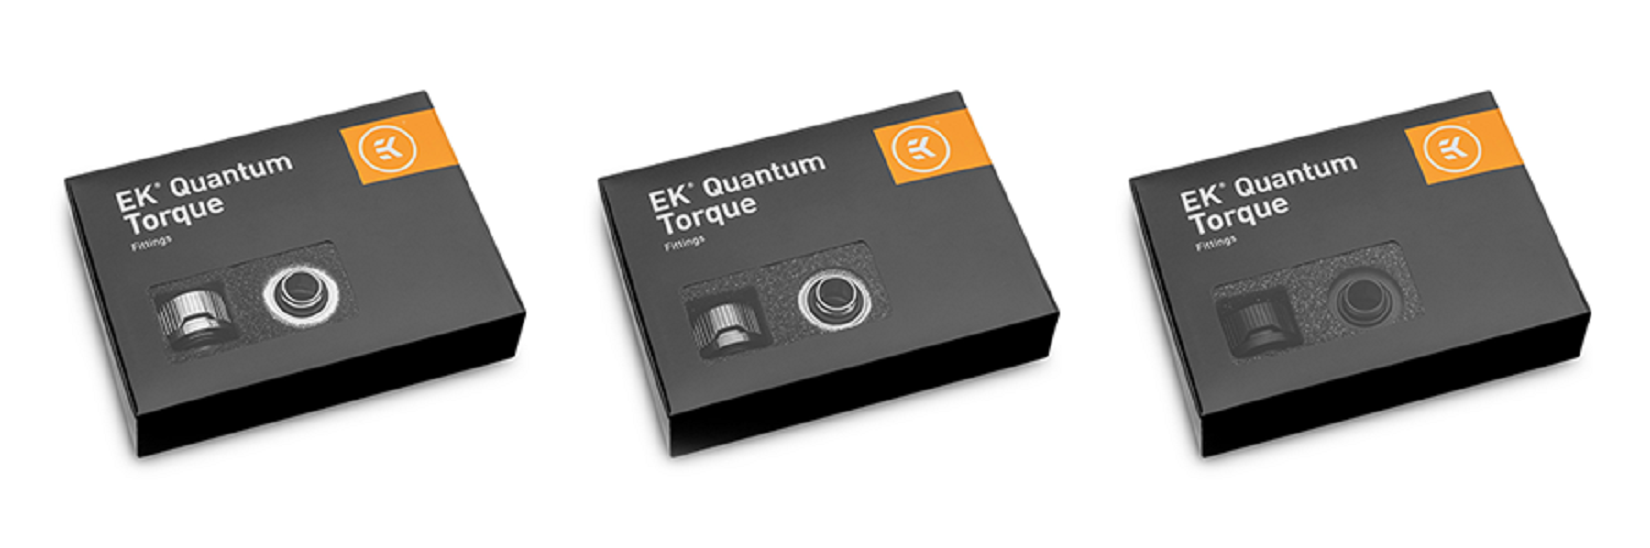 EK-Quantum Torque 6-Pack STC 10/13 - Black.1